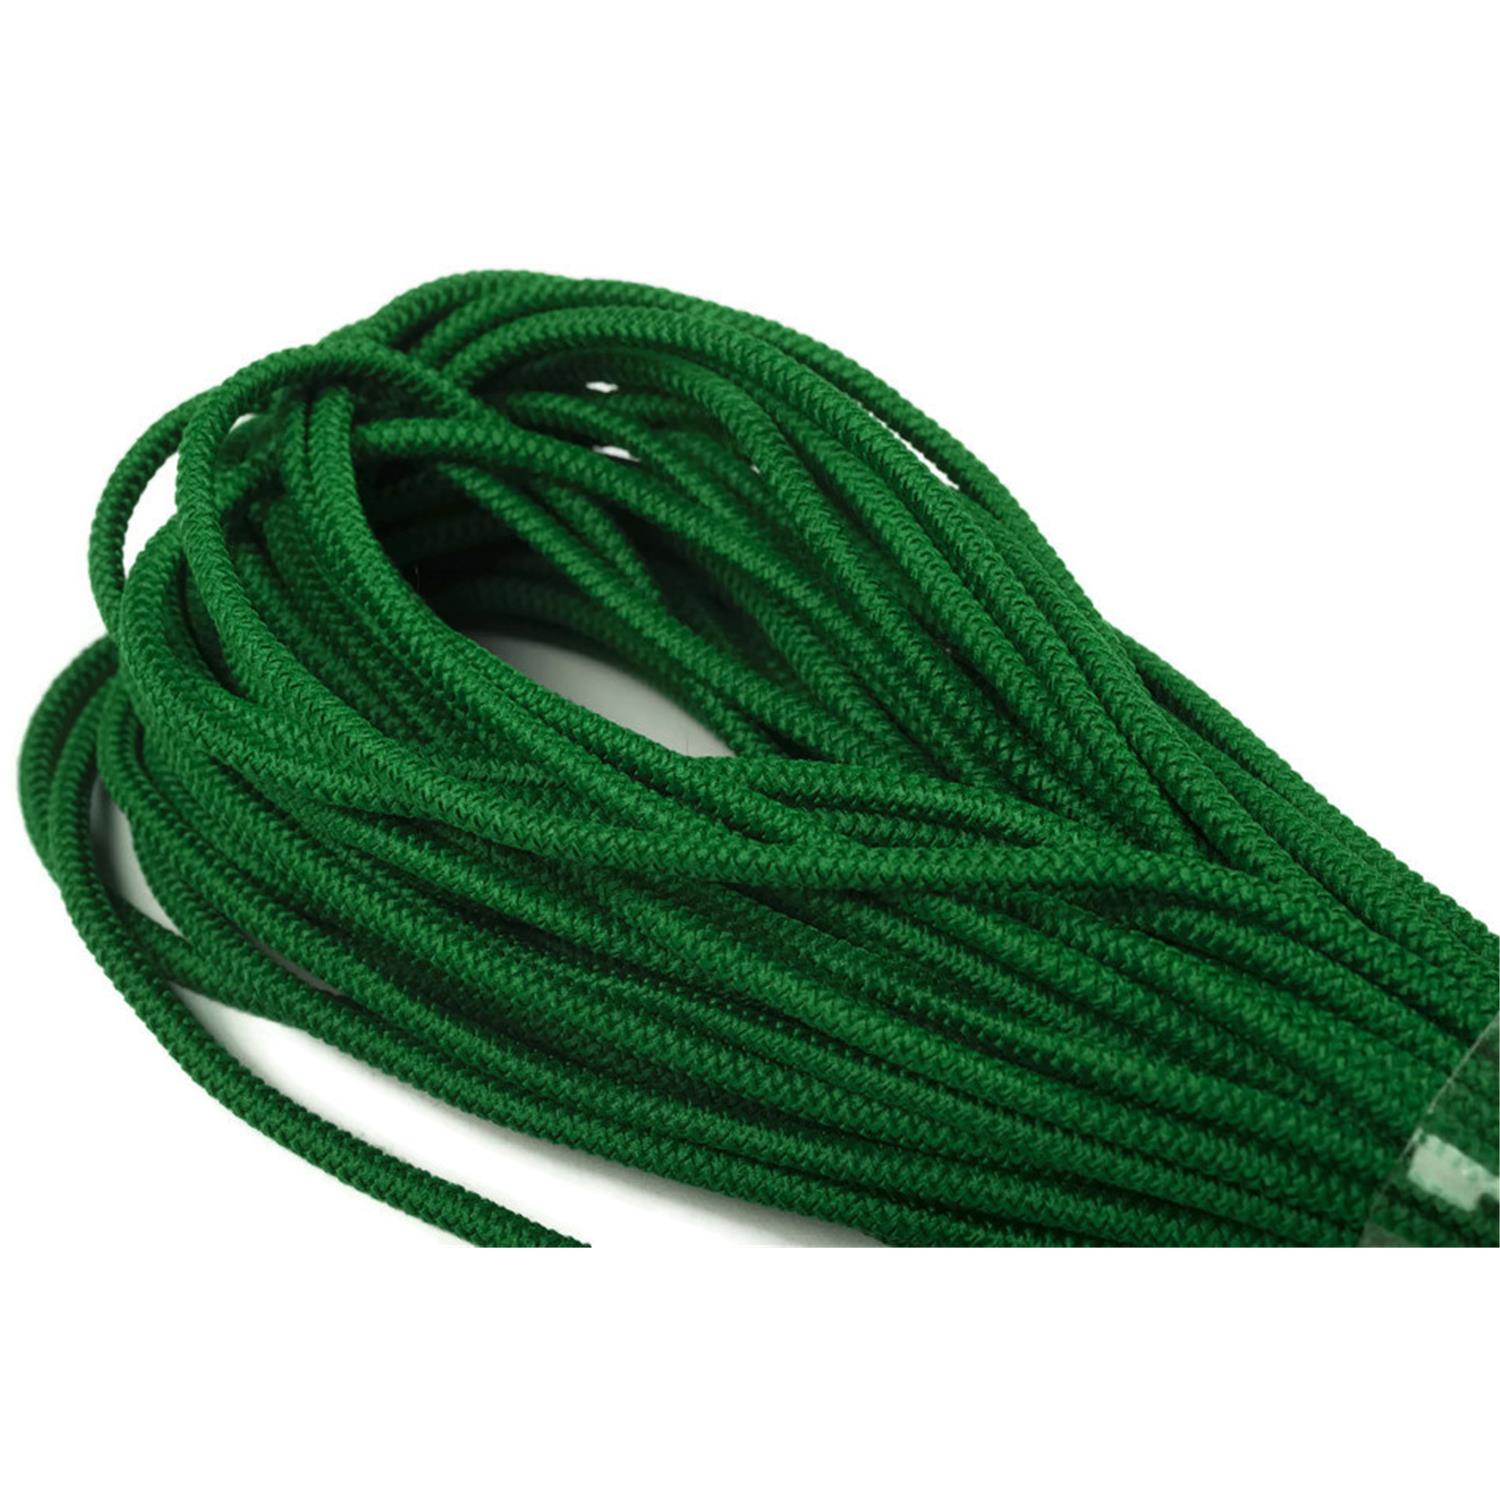 Gummikordel, 3mm, Kordel elastisch, grassgrün #30 10 meter